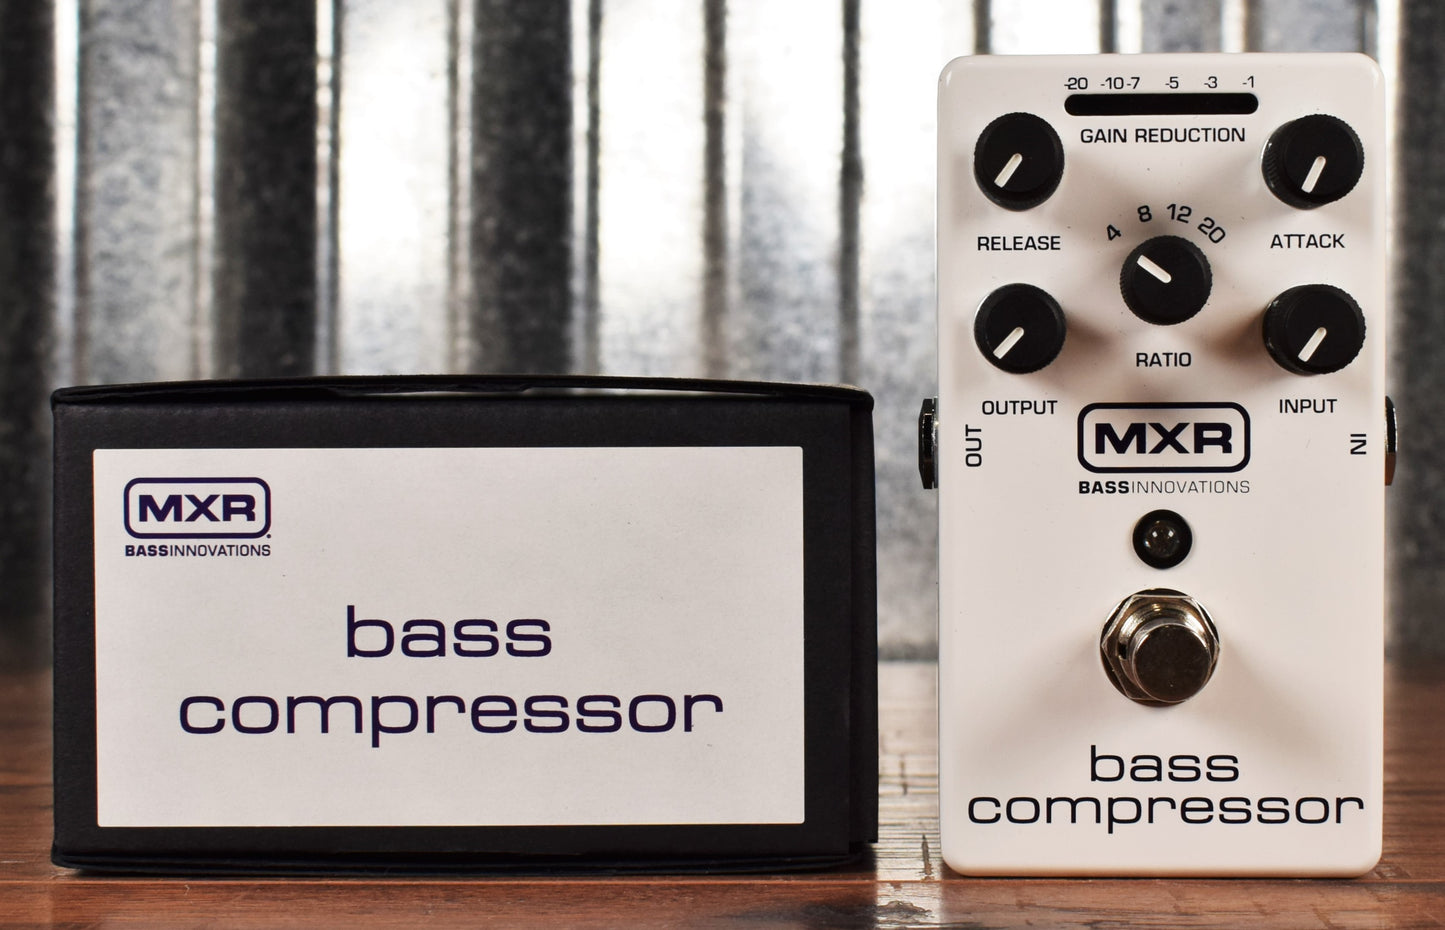 Dunlop MXR M87 Bass Compressor Bass Guitar Effect Pedal